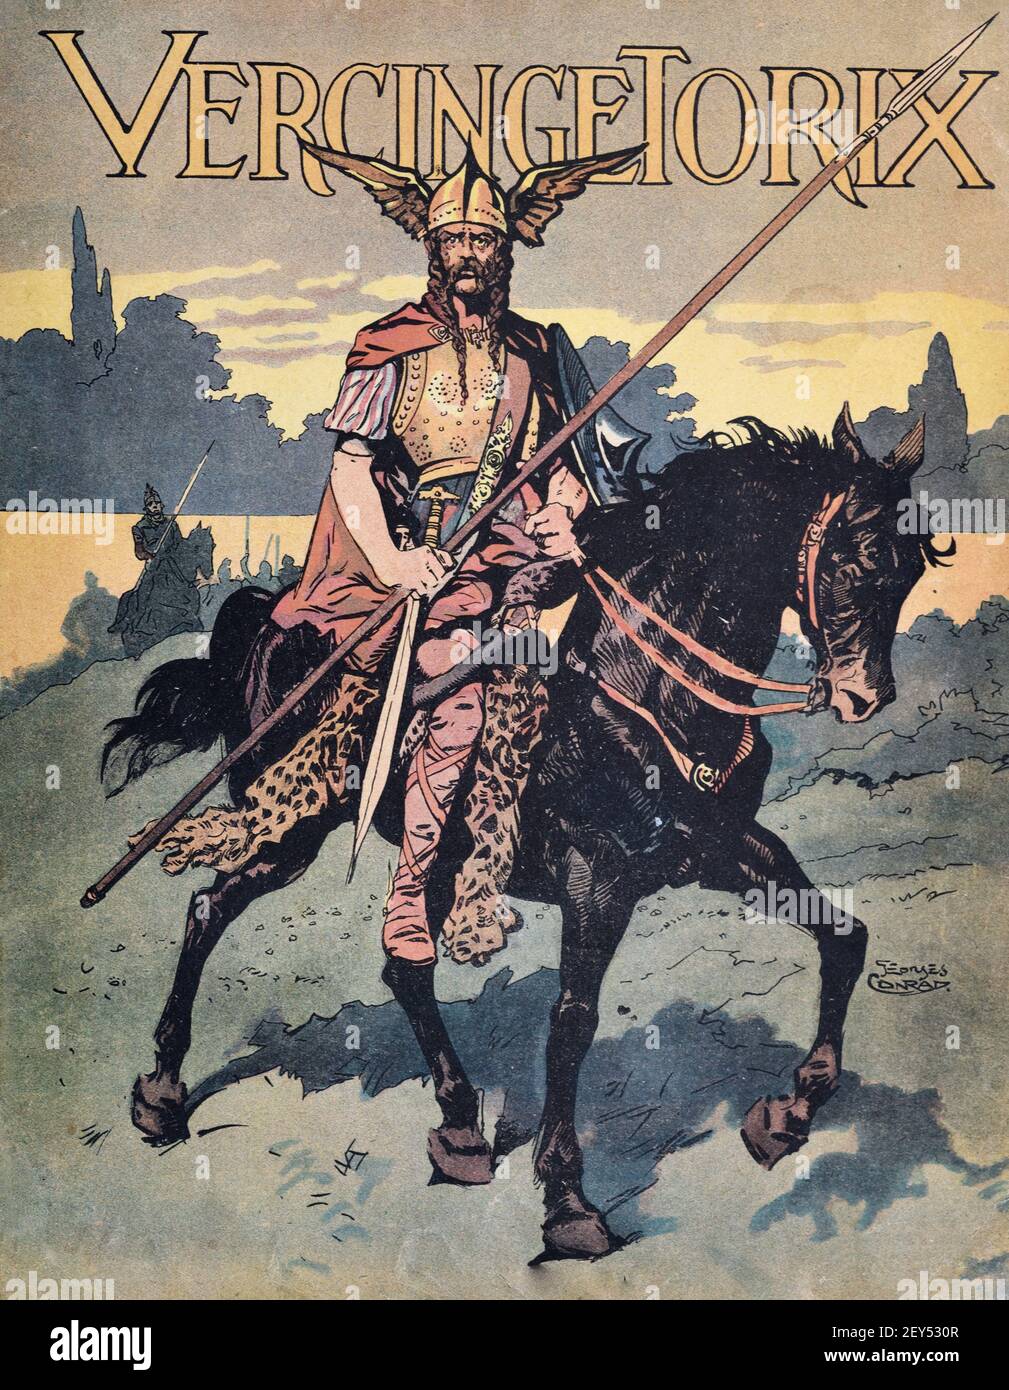 Vercingetorix (c82BC-46BC) Roi et Chieftain de la tribu des Arveni, équitation, en Gaule, France antique. Illustration ancienne c1940 Banque D'Images